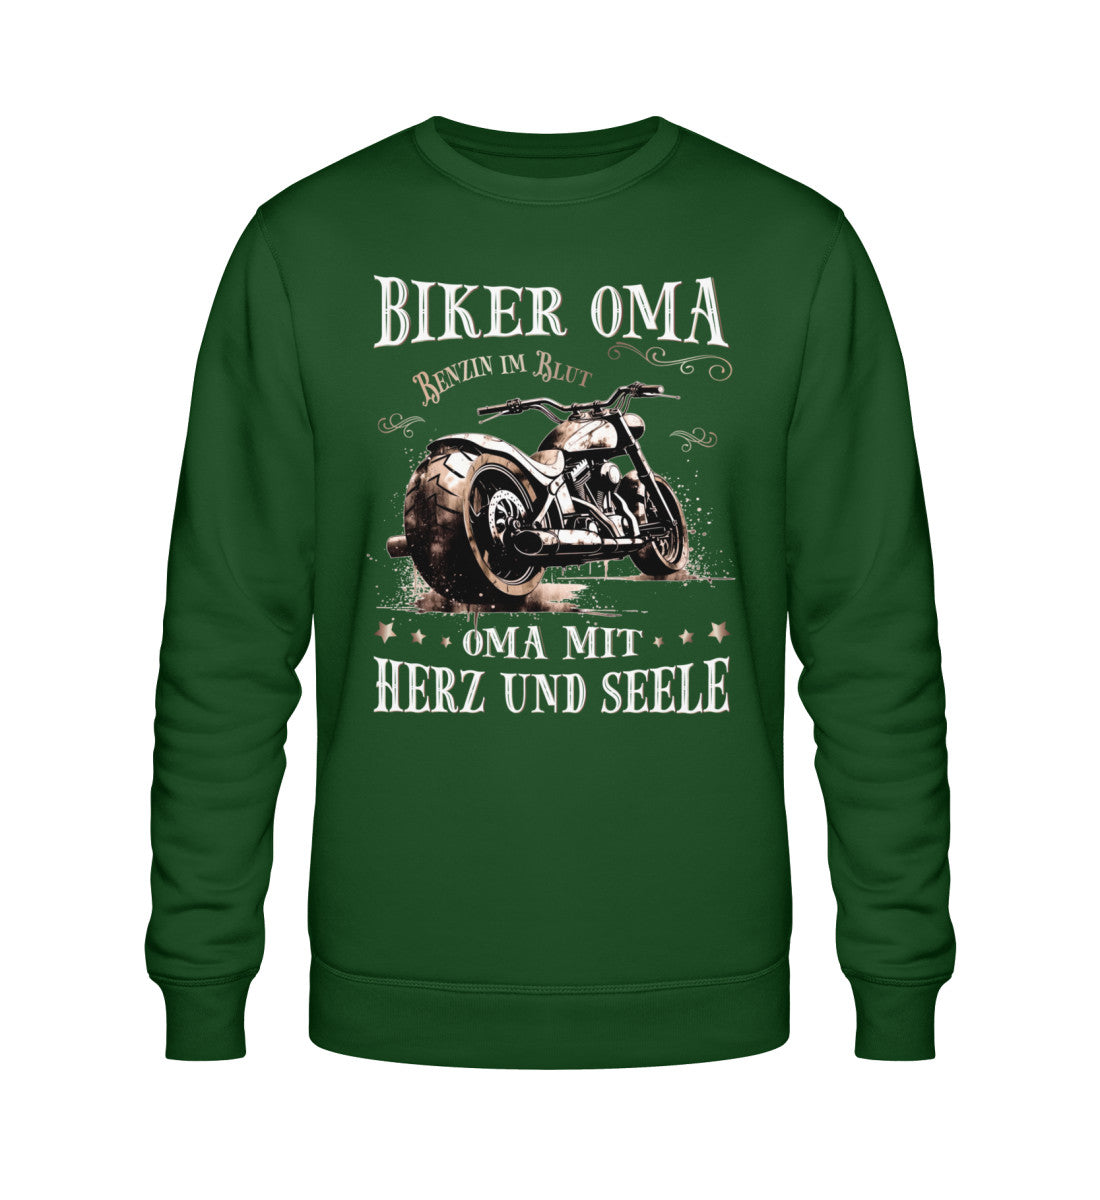 Ein Sweatshirt für Motorradfahrerinnen von Wingbikers mit dem Aufdruck, Biker Oma - Benzin im Blut - Oma mit Herz und Seele, in dunkelgrün.